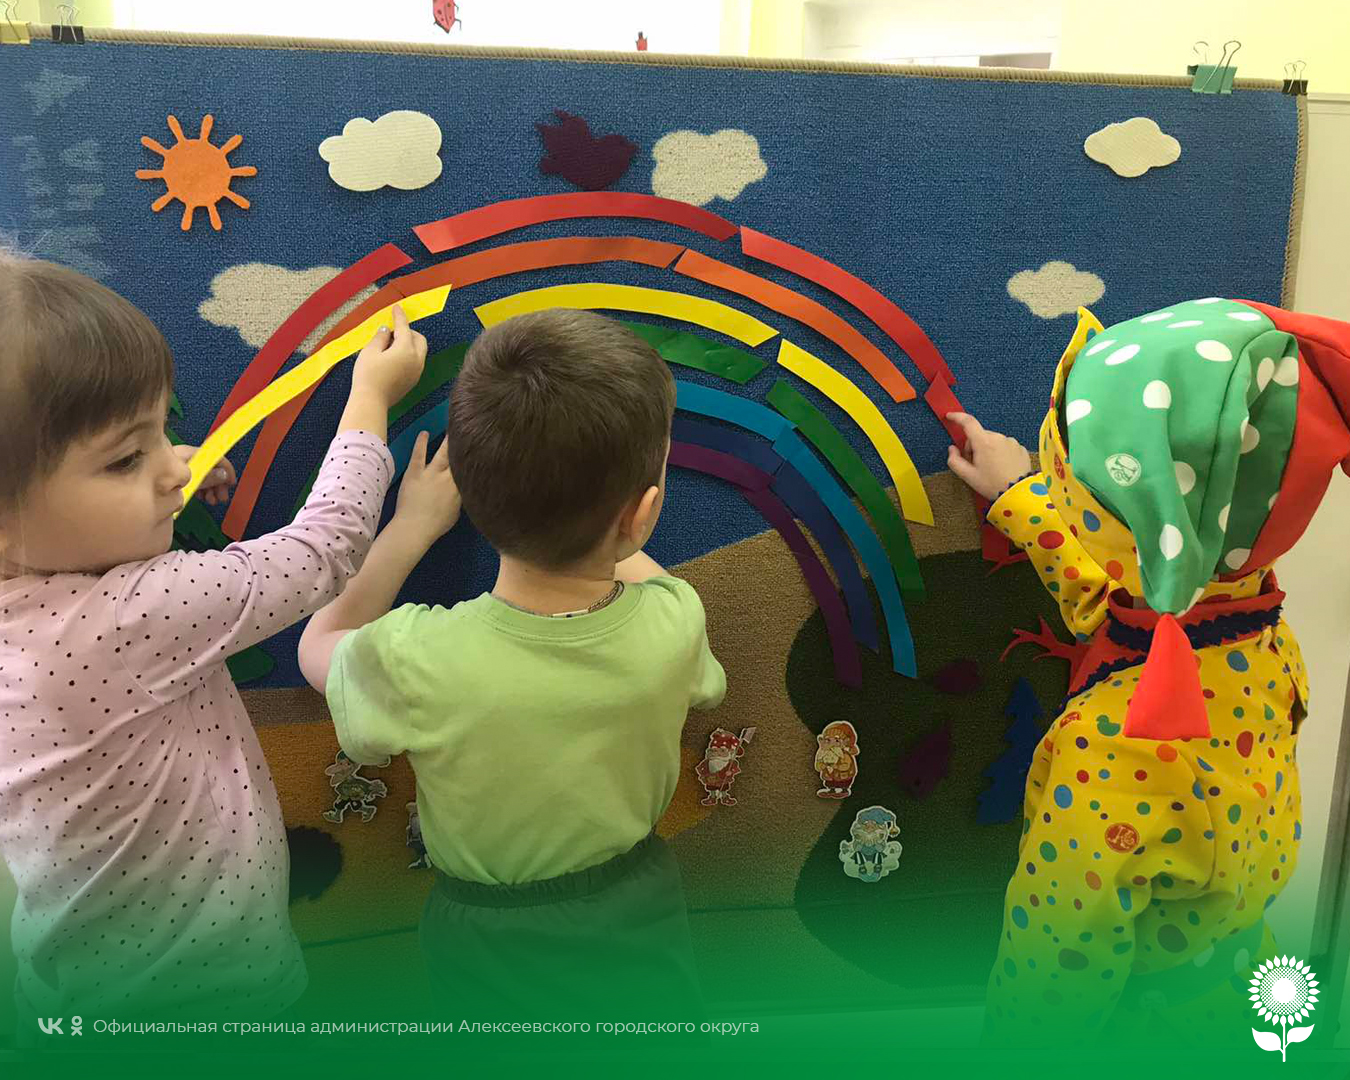 В детских садах Алексеевского городского округа прошла игровая развлекательная программа «Дом веселых затей»